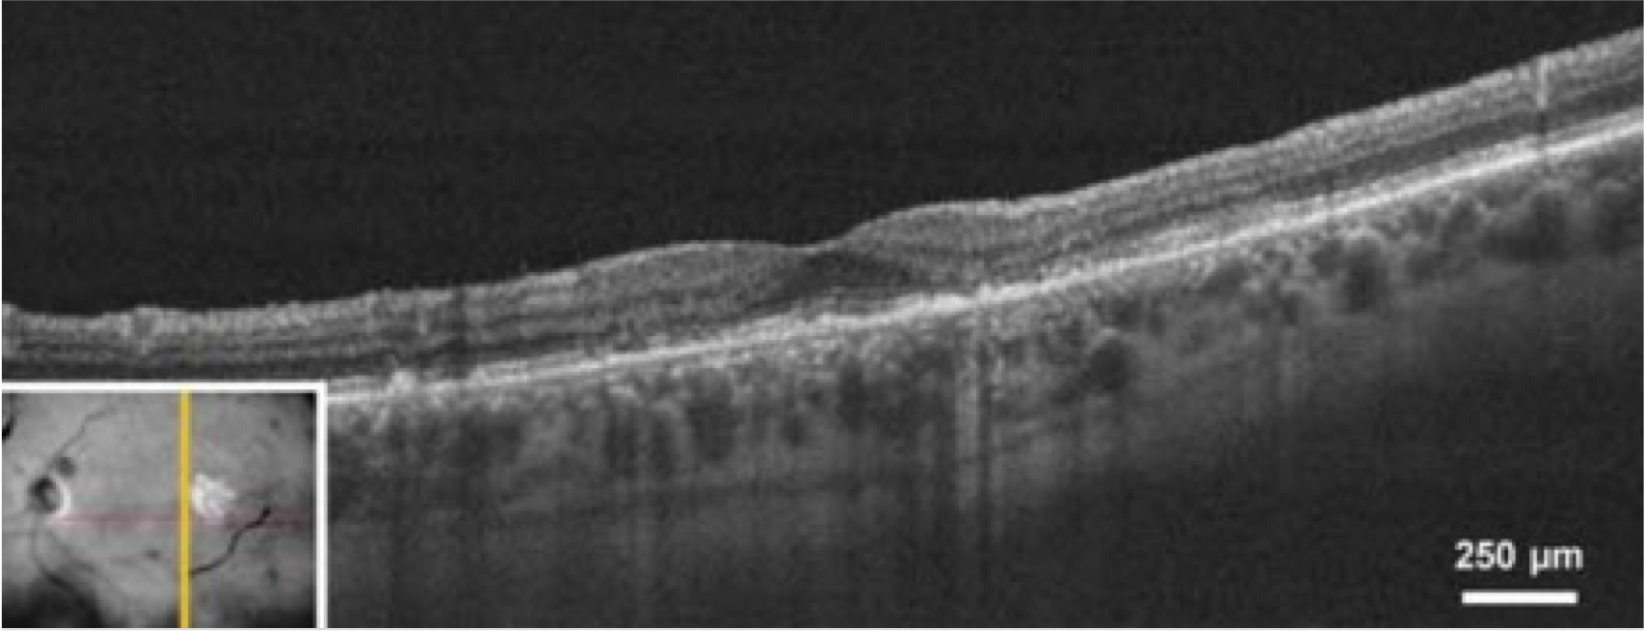 dryAMD.eu Optische Kohärenztomographie (OCT) Bild des Auges.